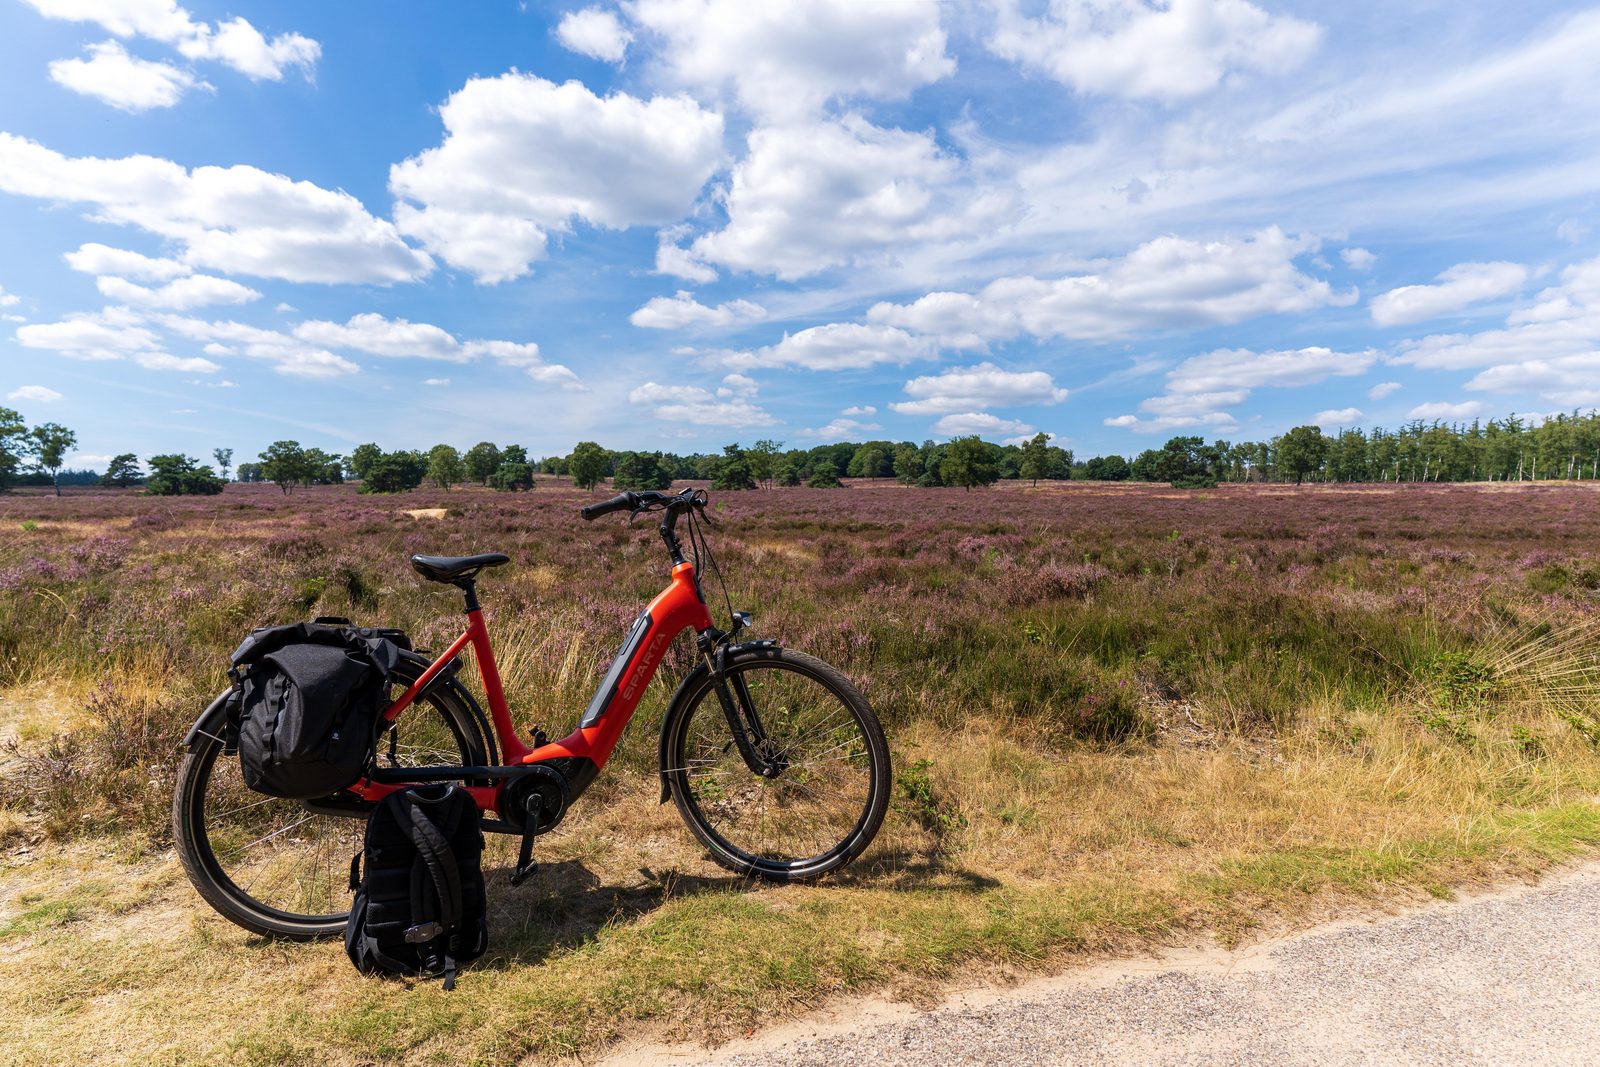 A lovely bike excursion around Harderwijk